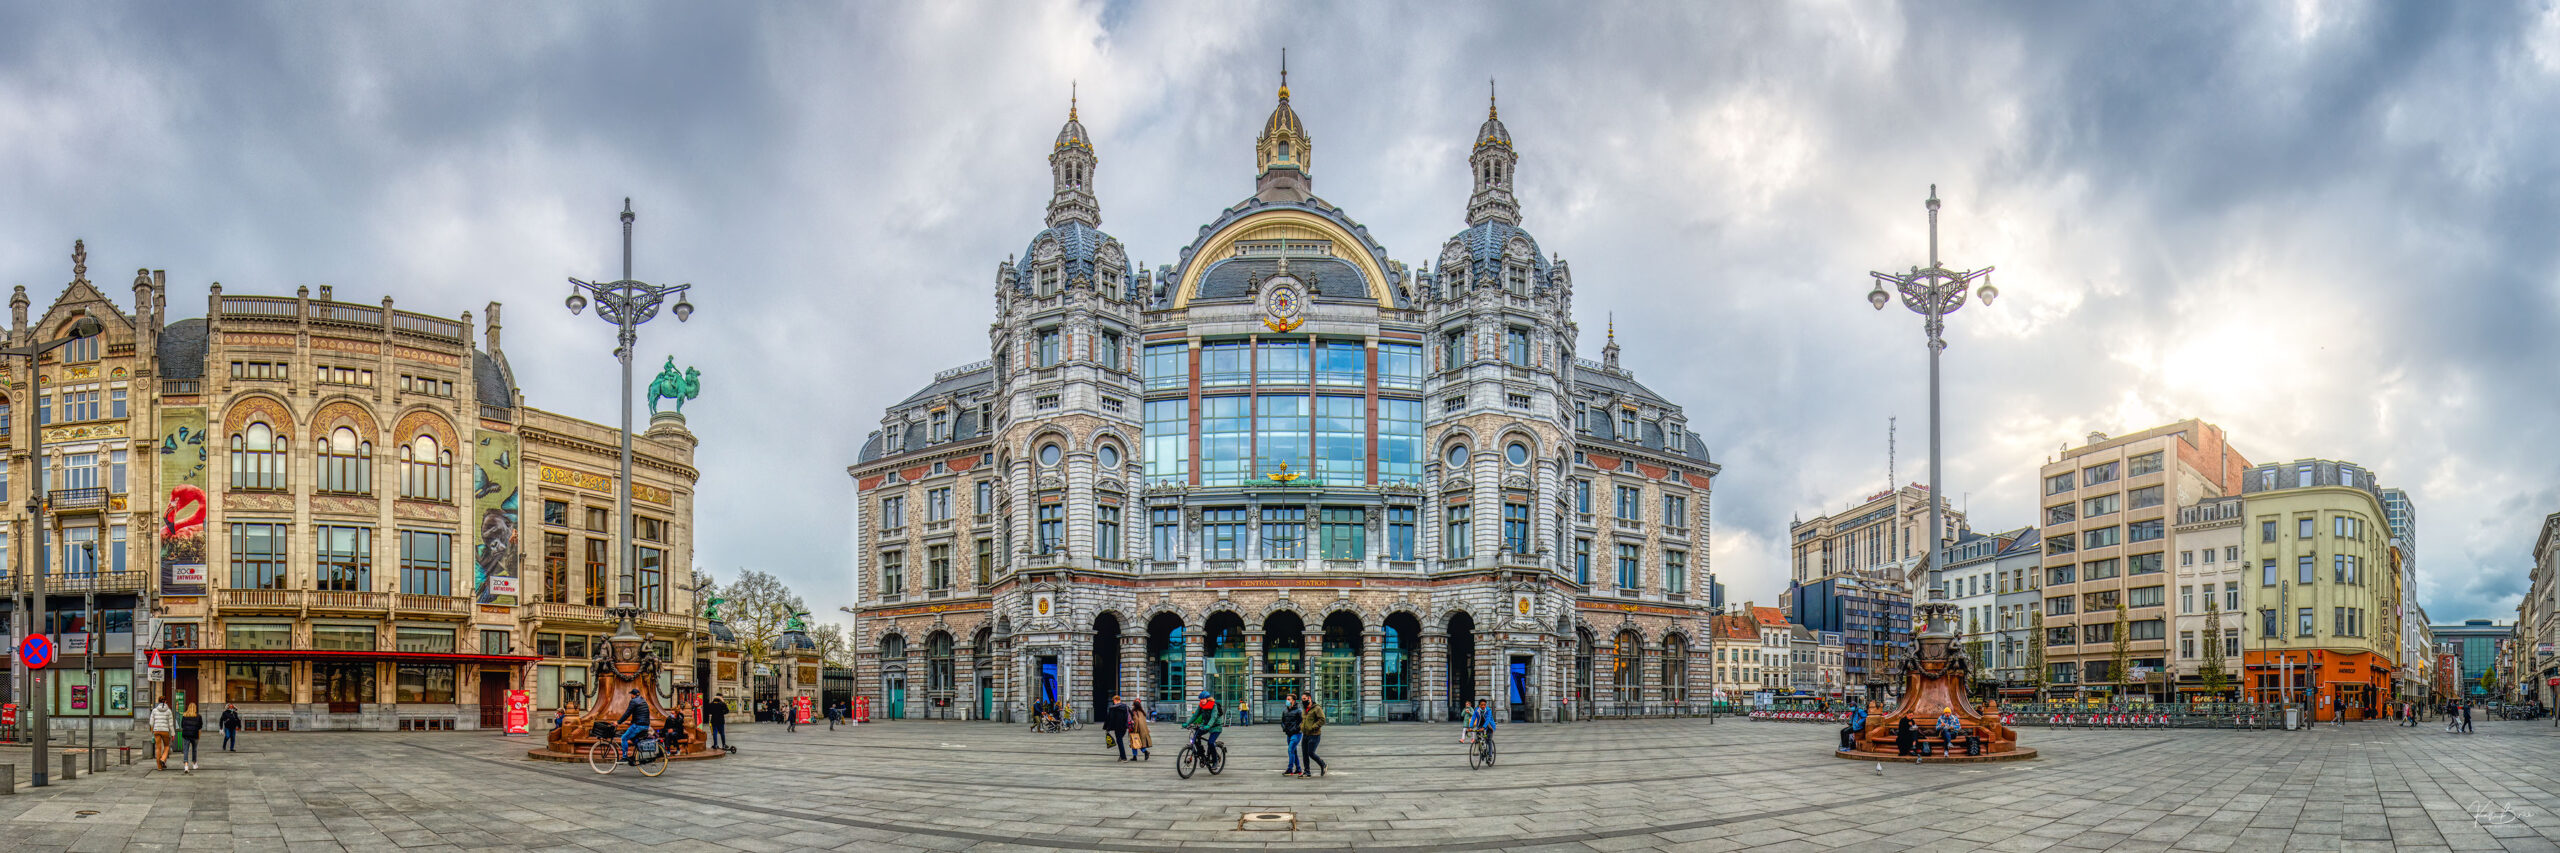 Antwerp panoramic city view